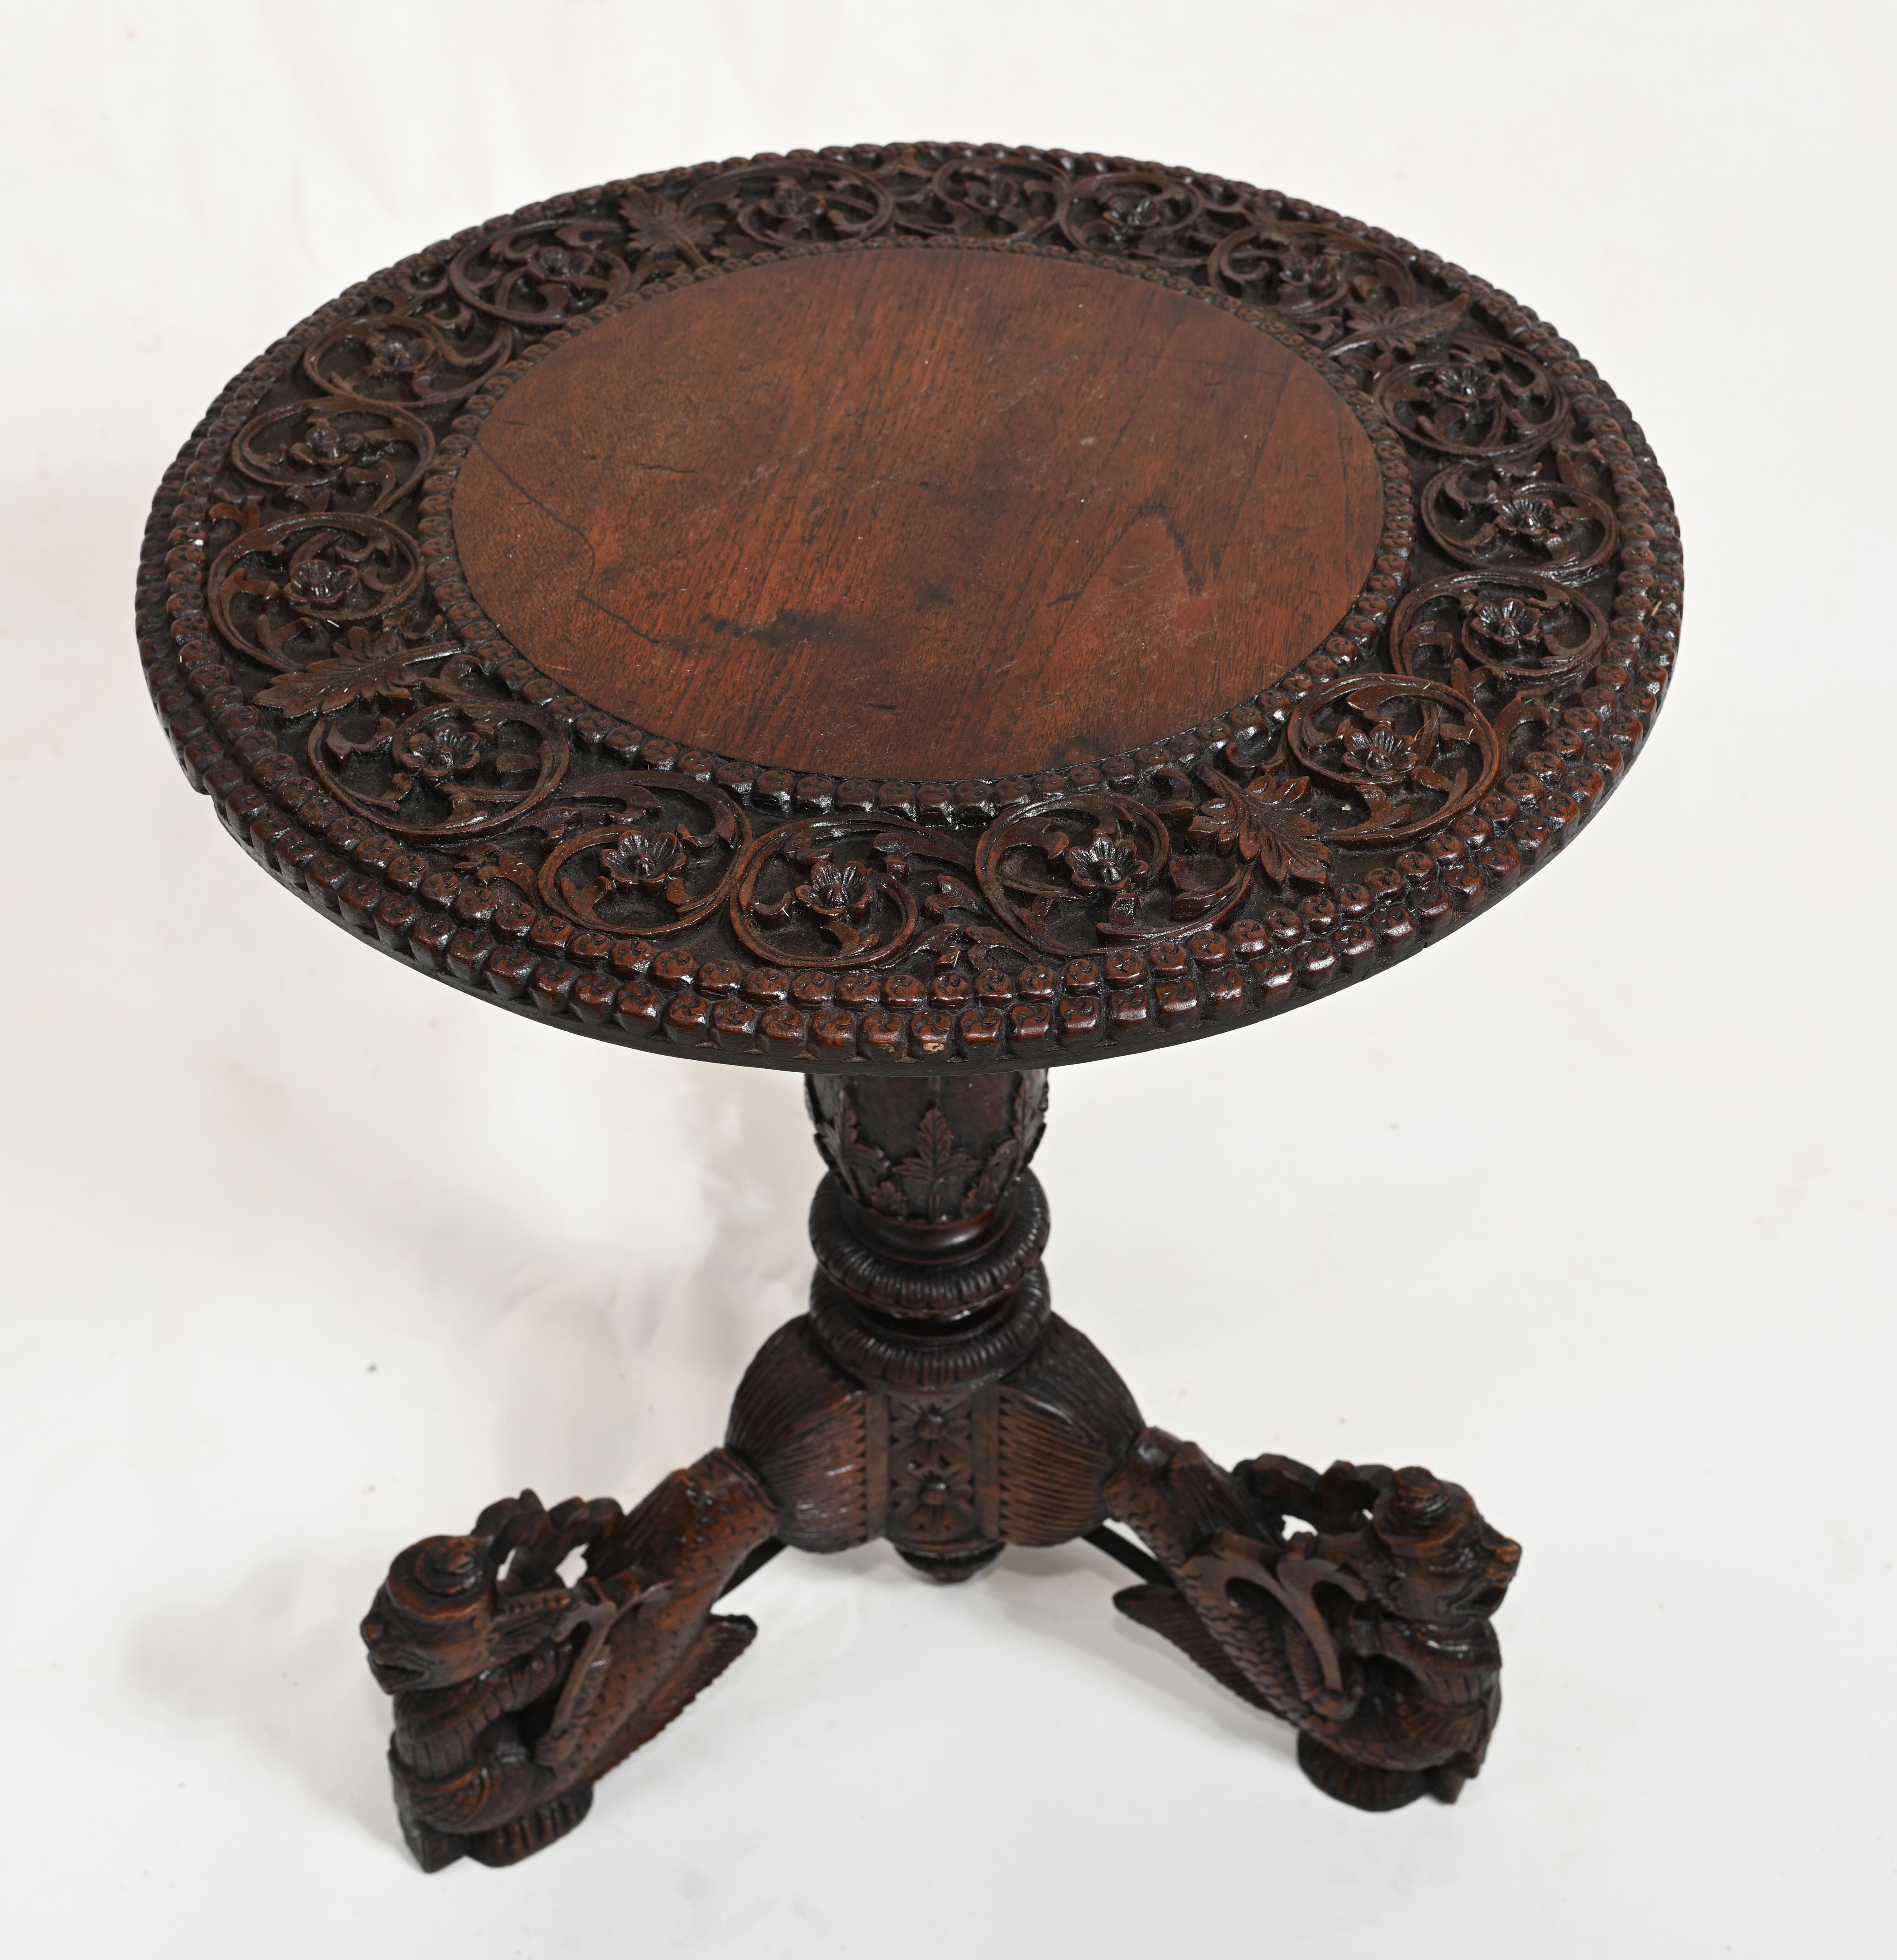 Une table ronde birmane hautement sculptée sur une base tri-formée.
Circa 1840
Jambes se terminant par des caractères asiatiques mythiques
Nous pouvons expédier nos produits partout dans le monde. 
Offert en grande forme, prêt à être utilisé